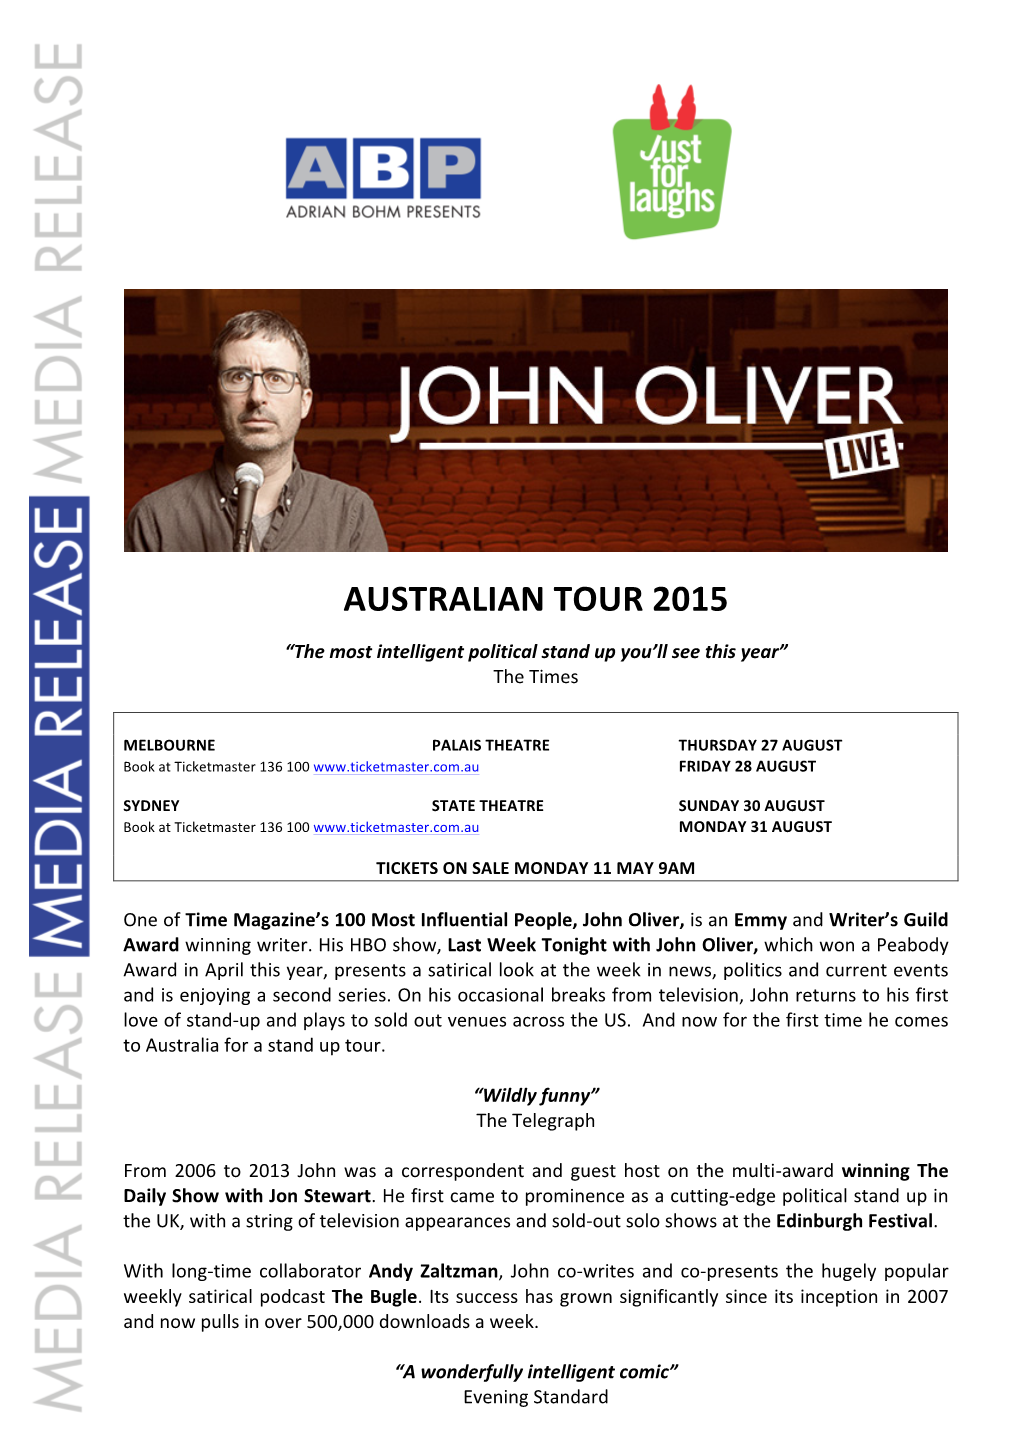 John Oliver Release 2015